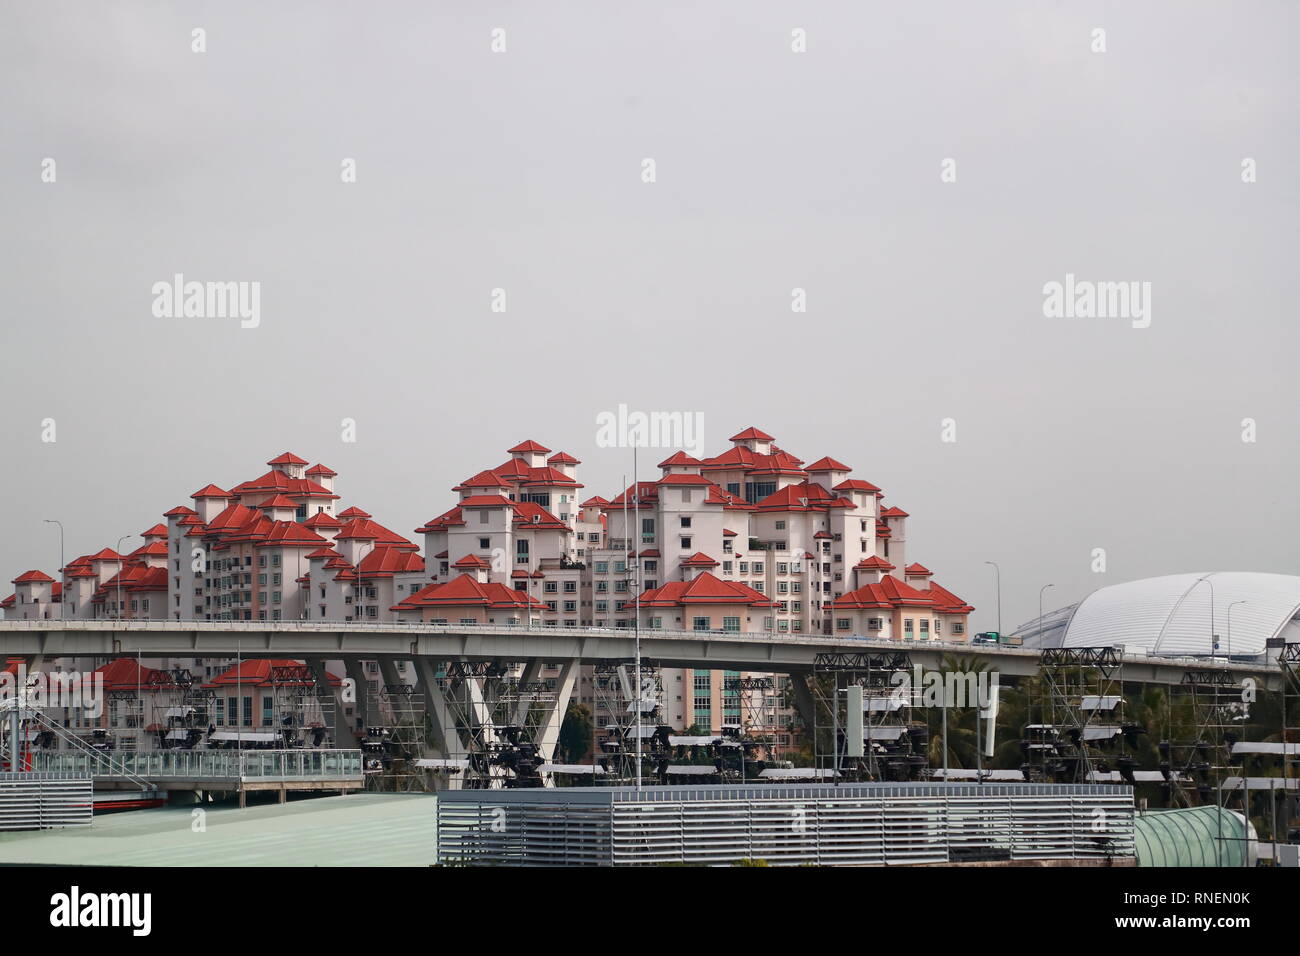 Modernes Apartment Blocks im chinesischen Stil, Sigapore Stockfoto